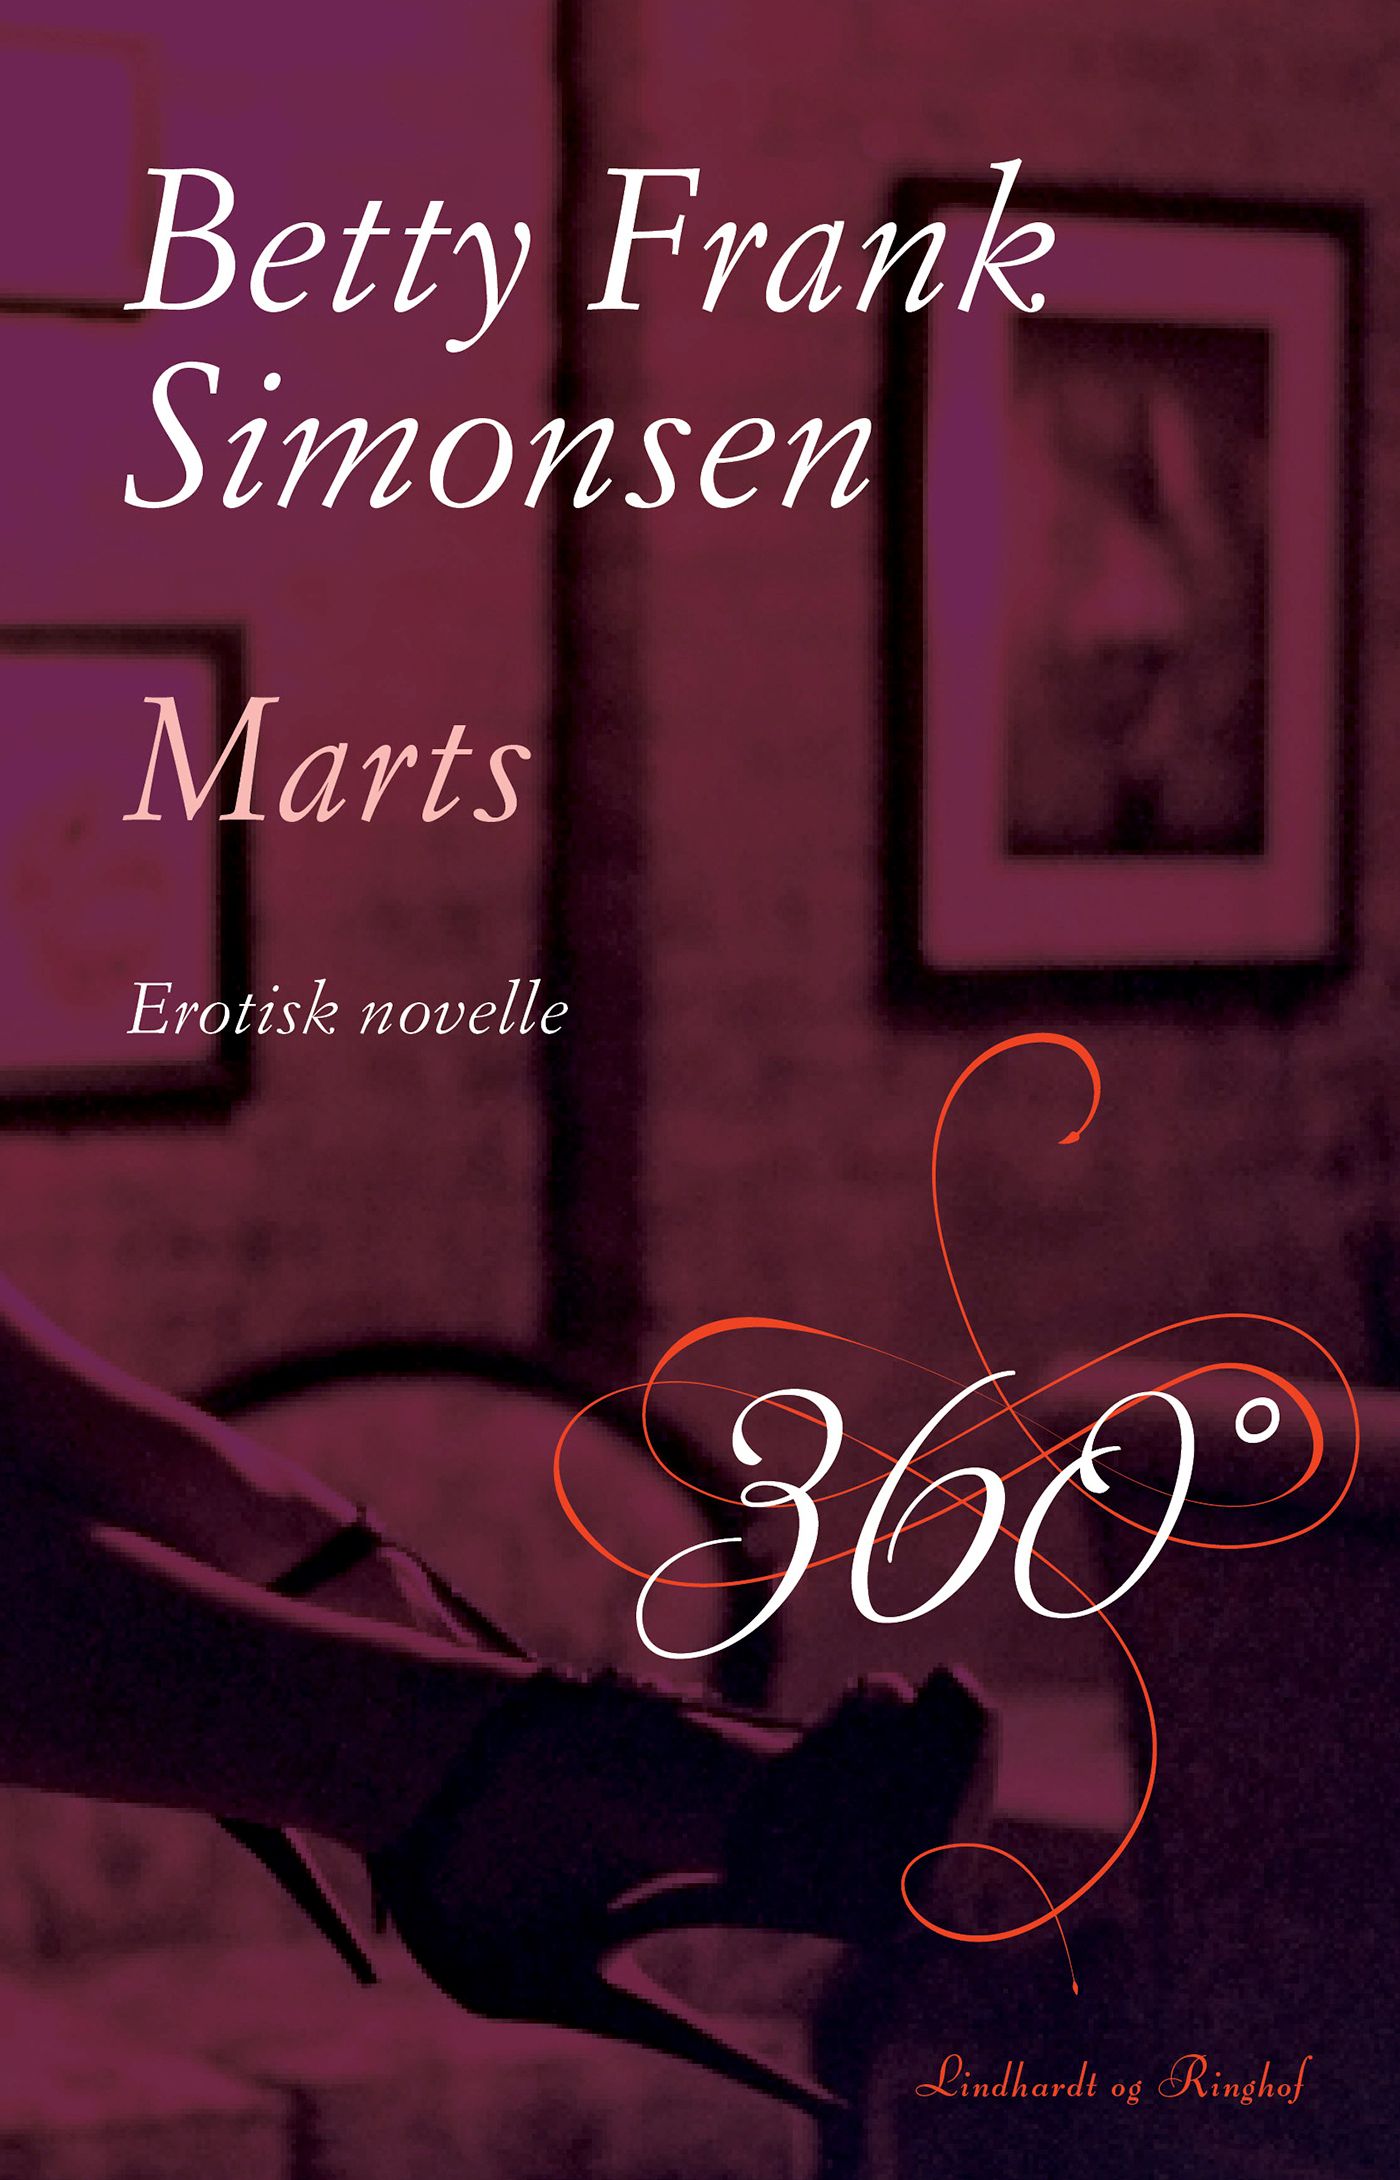 Marts, e-bok av Betty Frank Simonsen